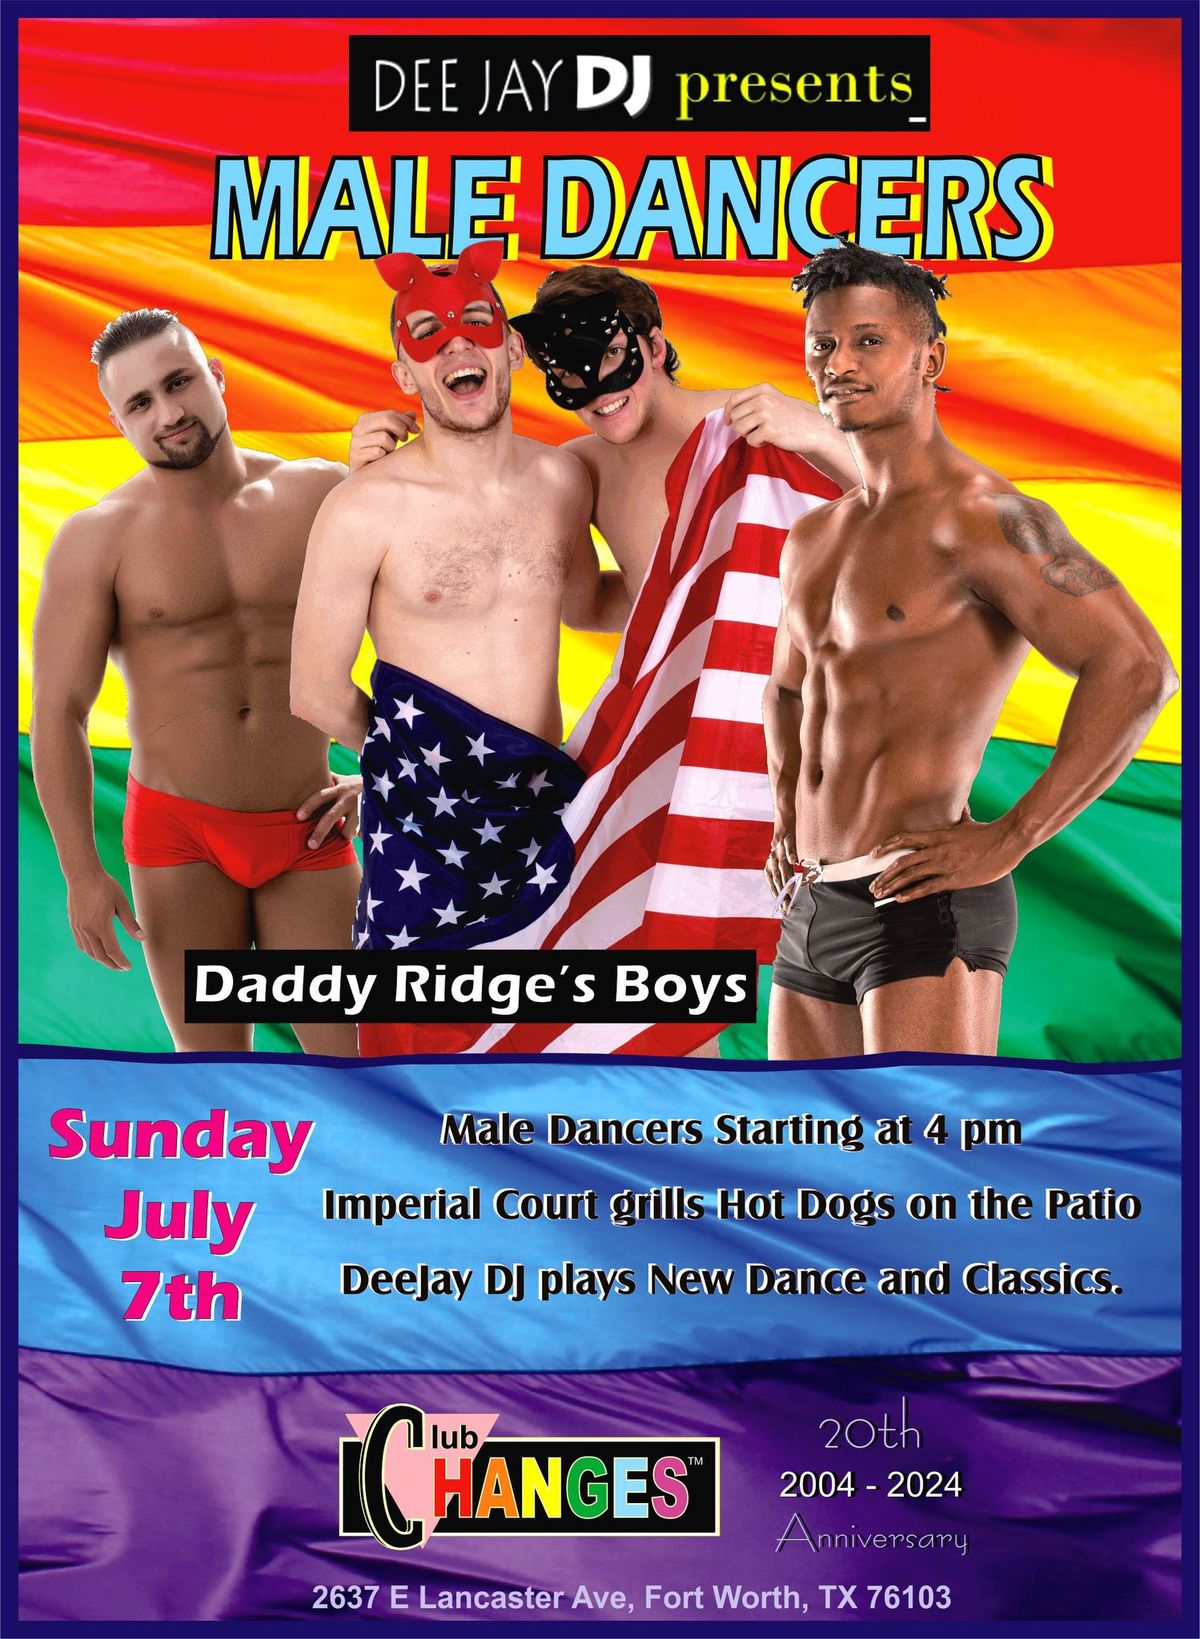 Deejay DJ Presents: Male Dancers!